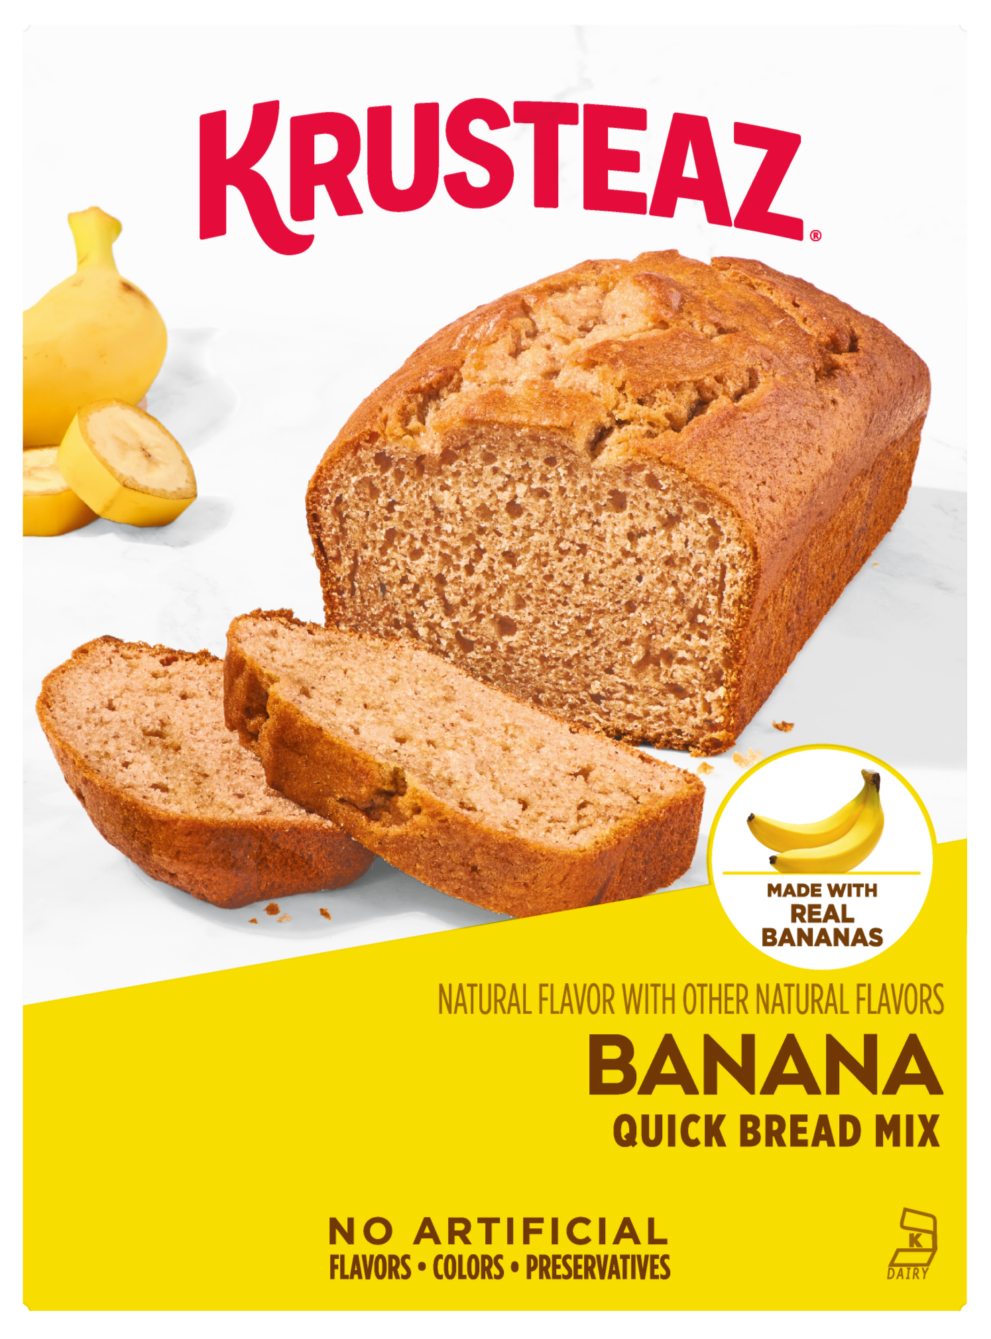 A box of Krusteaz Banana Quick Bread Mix.